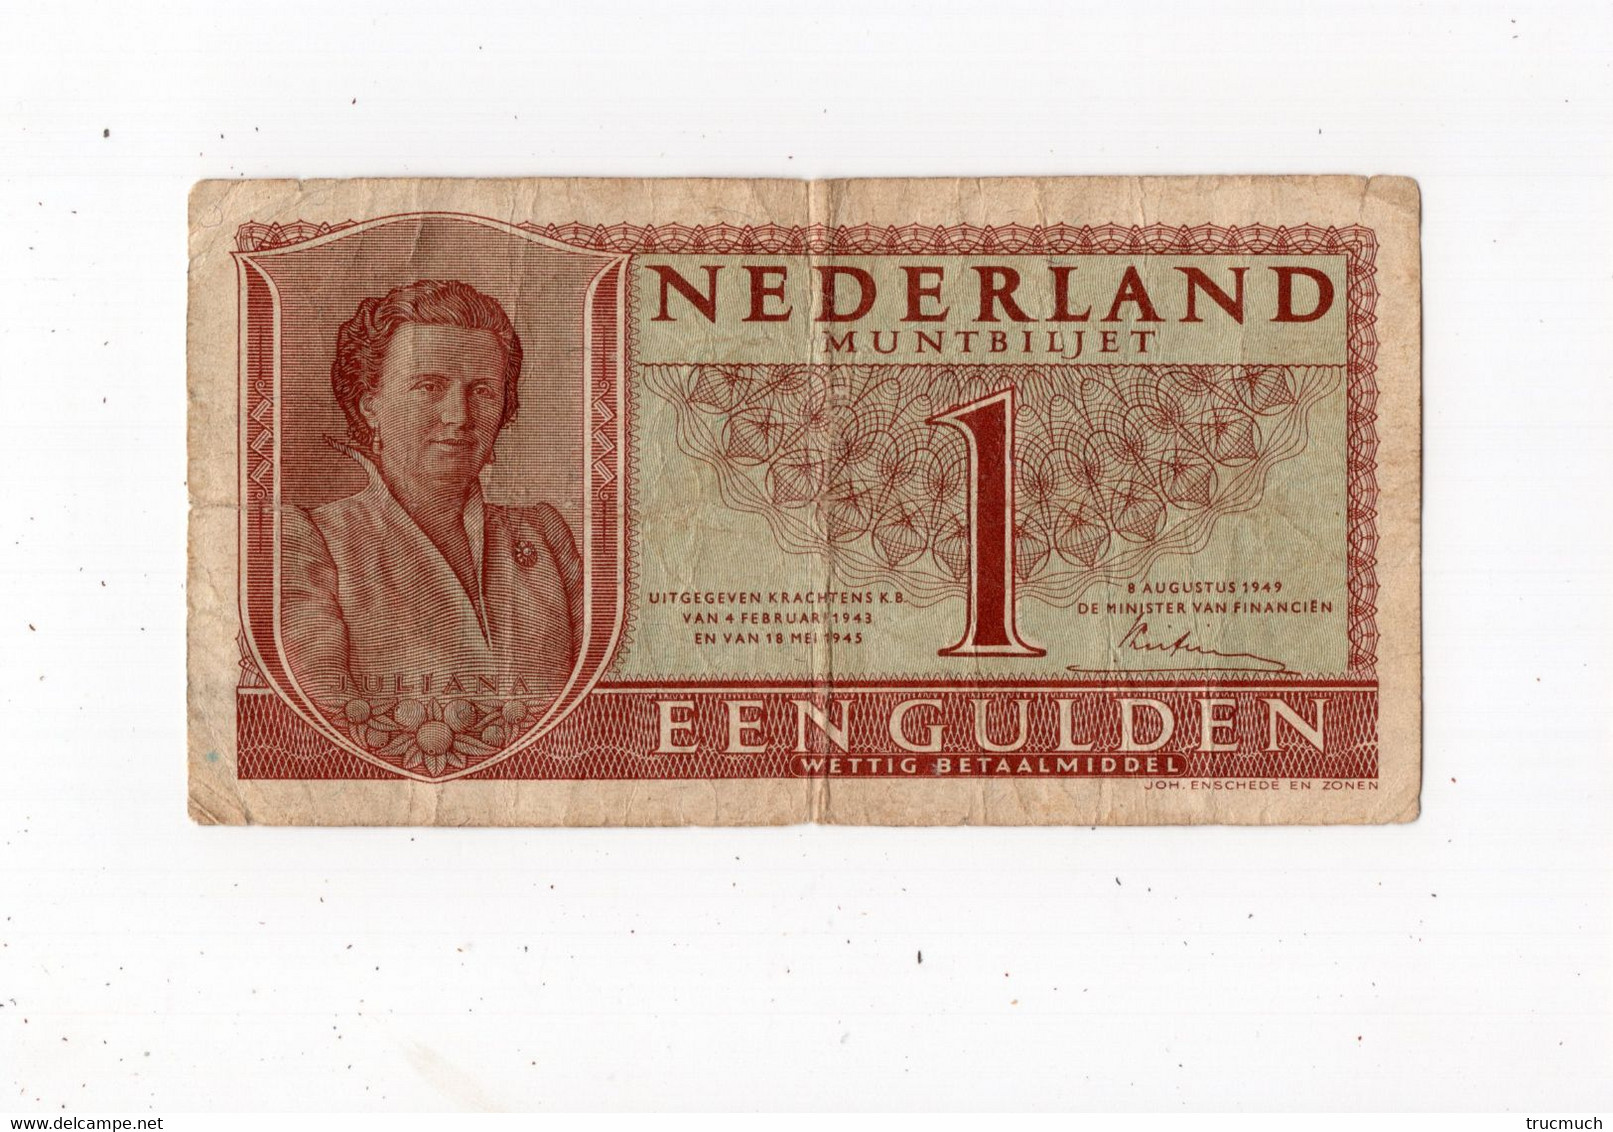 PAYS-BAS - Een Gulden - 08.08.1949 - 1  Florín Holandés (gulden)